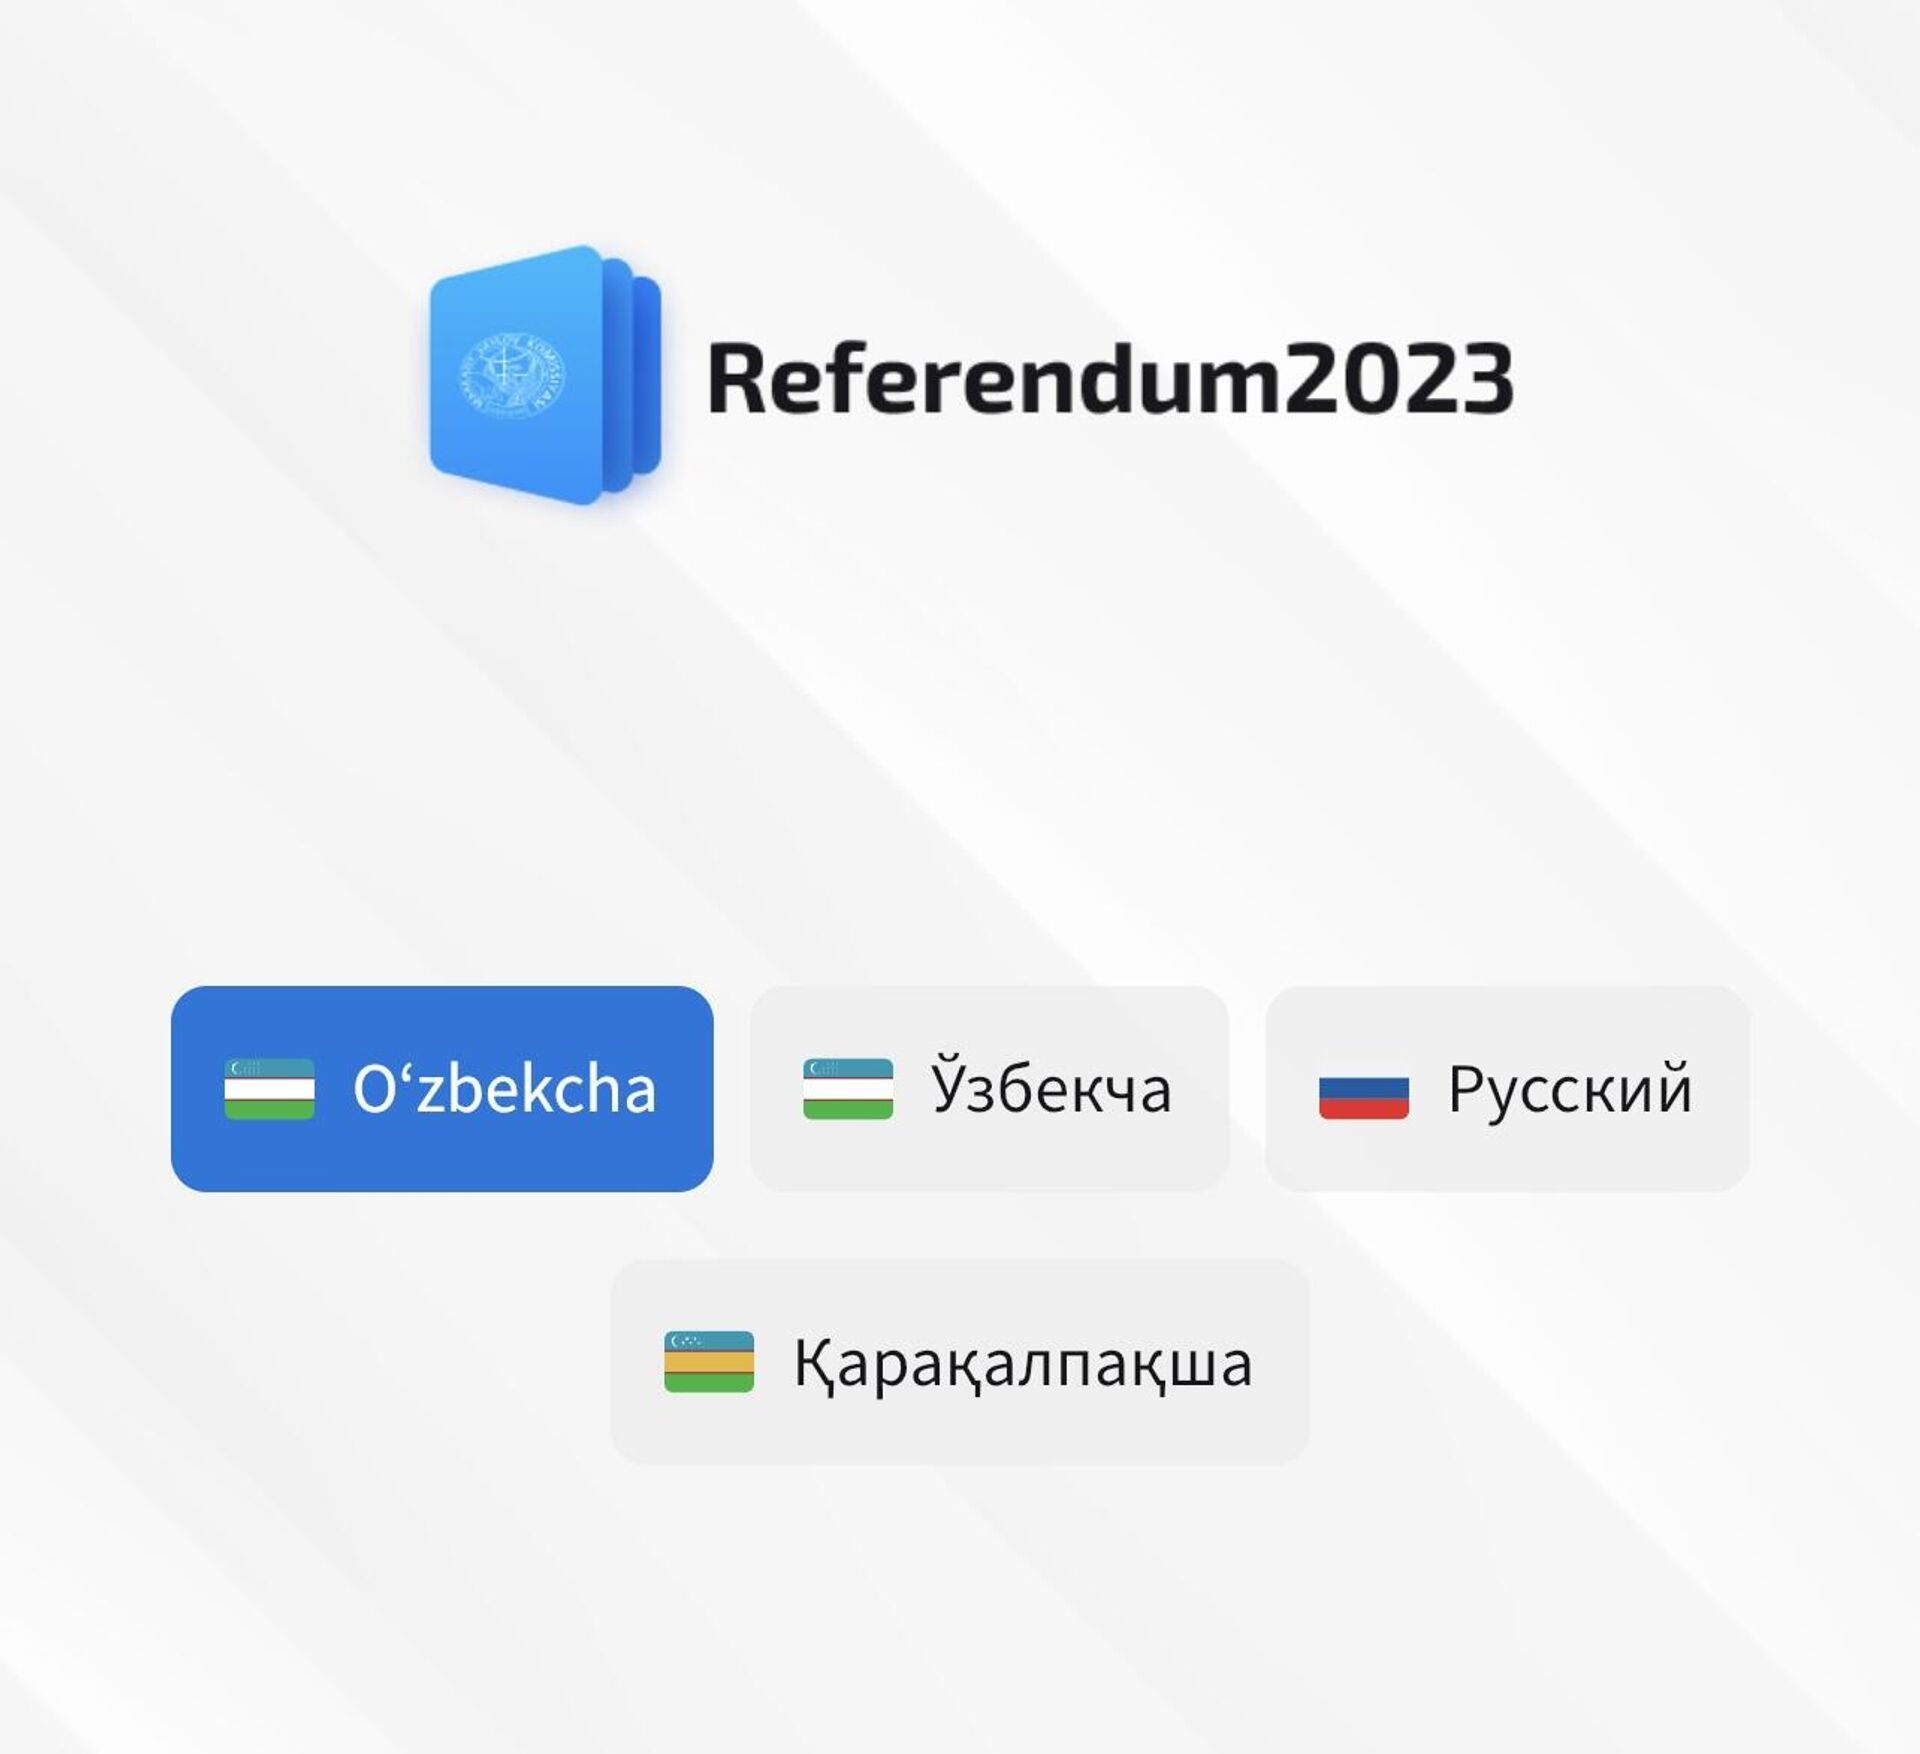 Референдум 2023 мобил иловаси  - Sputnik Ўзбекистон, 1920, 01.04.2023